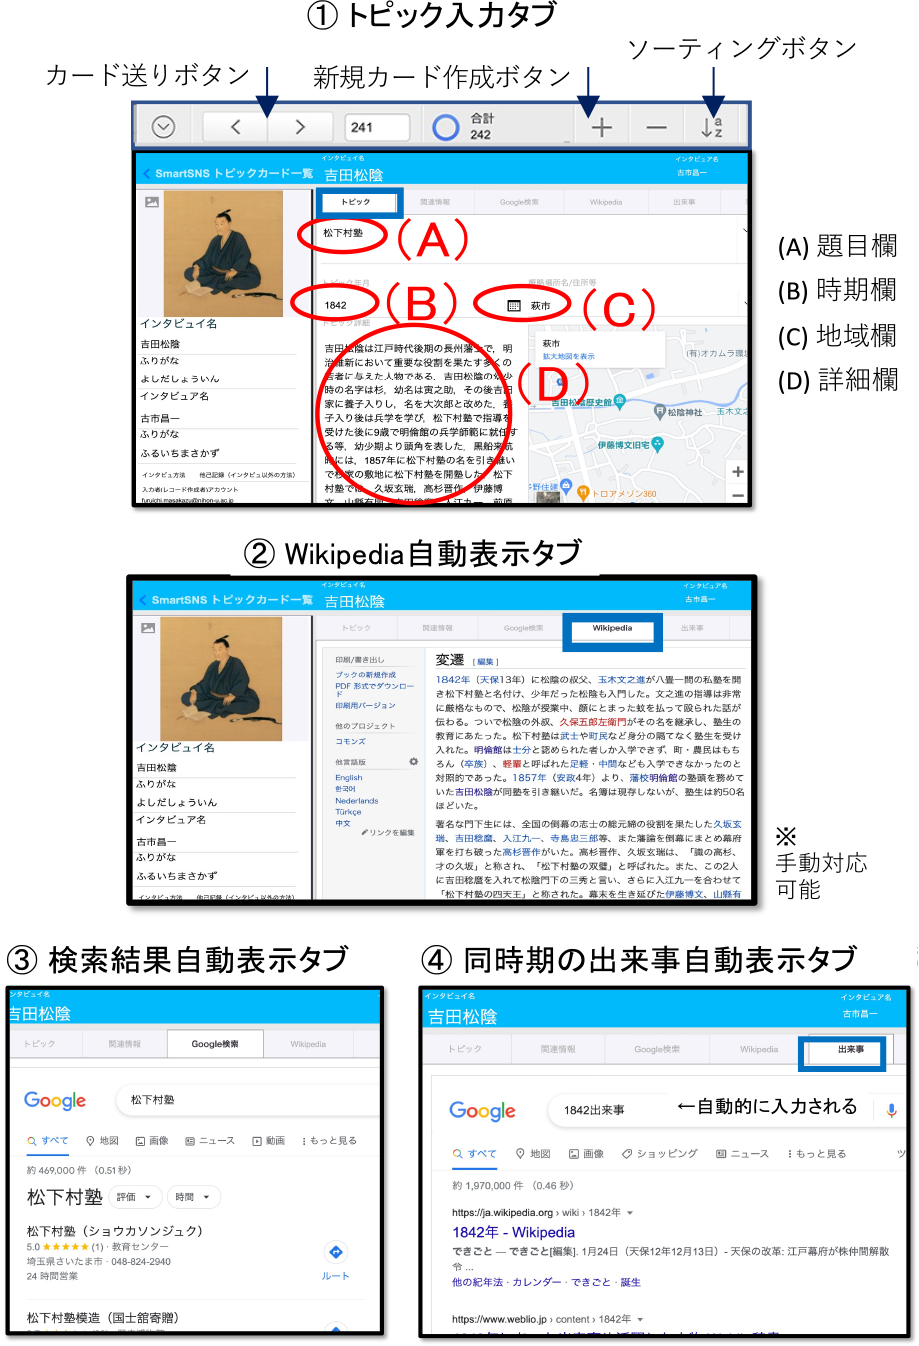 トピックカード入力タブと連動情報タブの例　Example of the topic card with linked information.